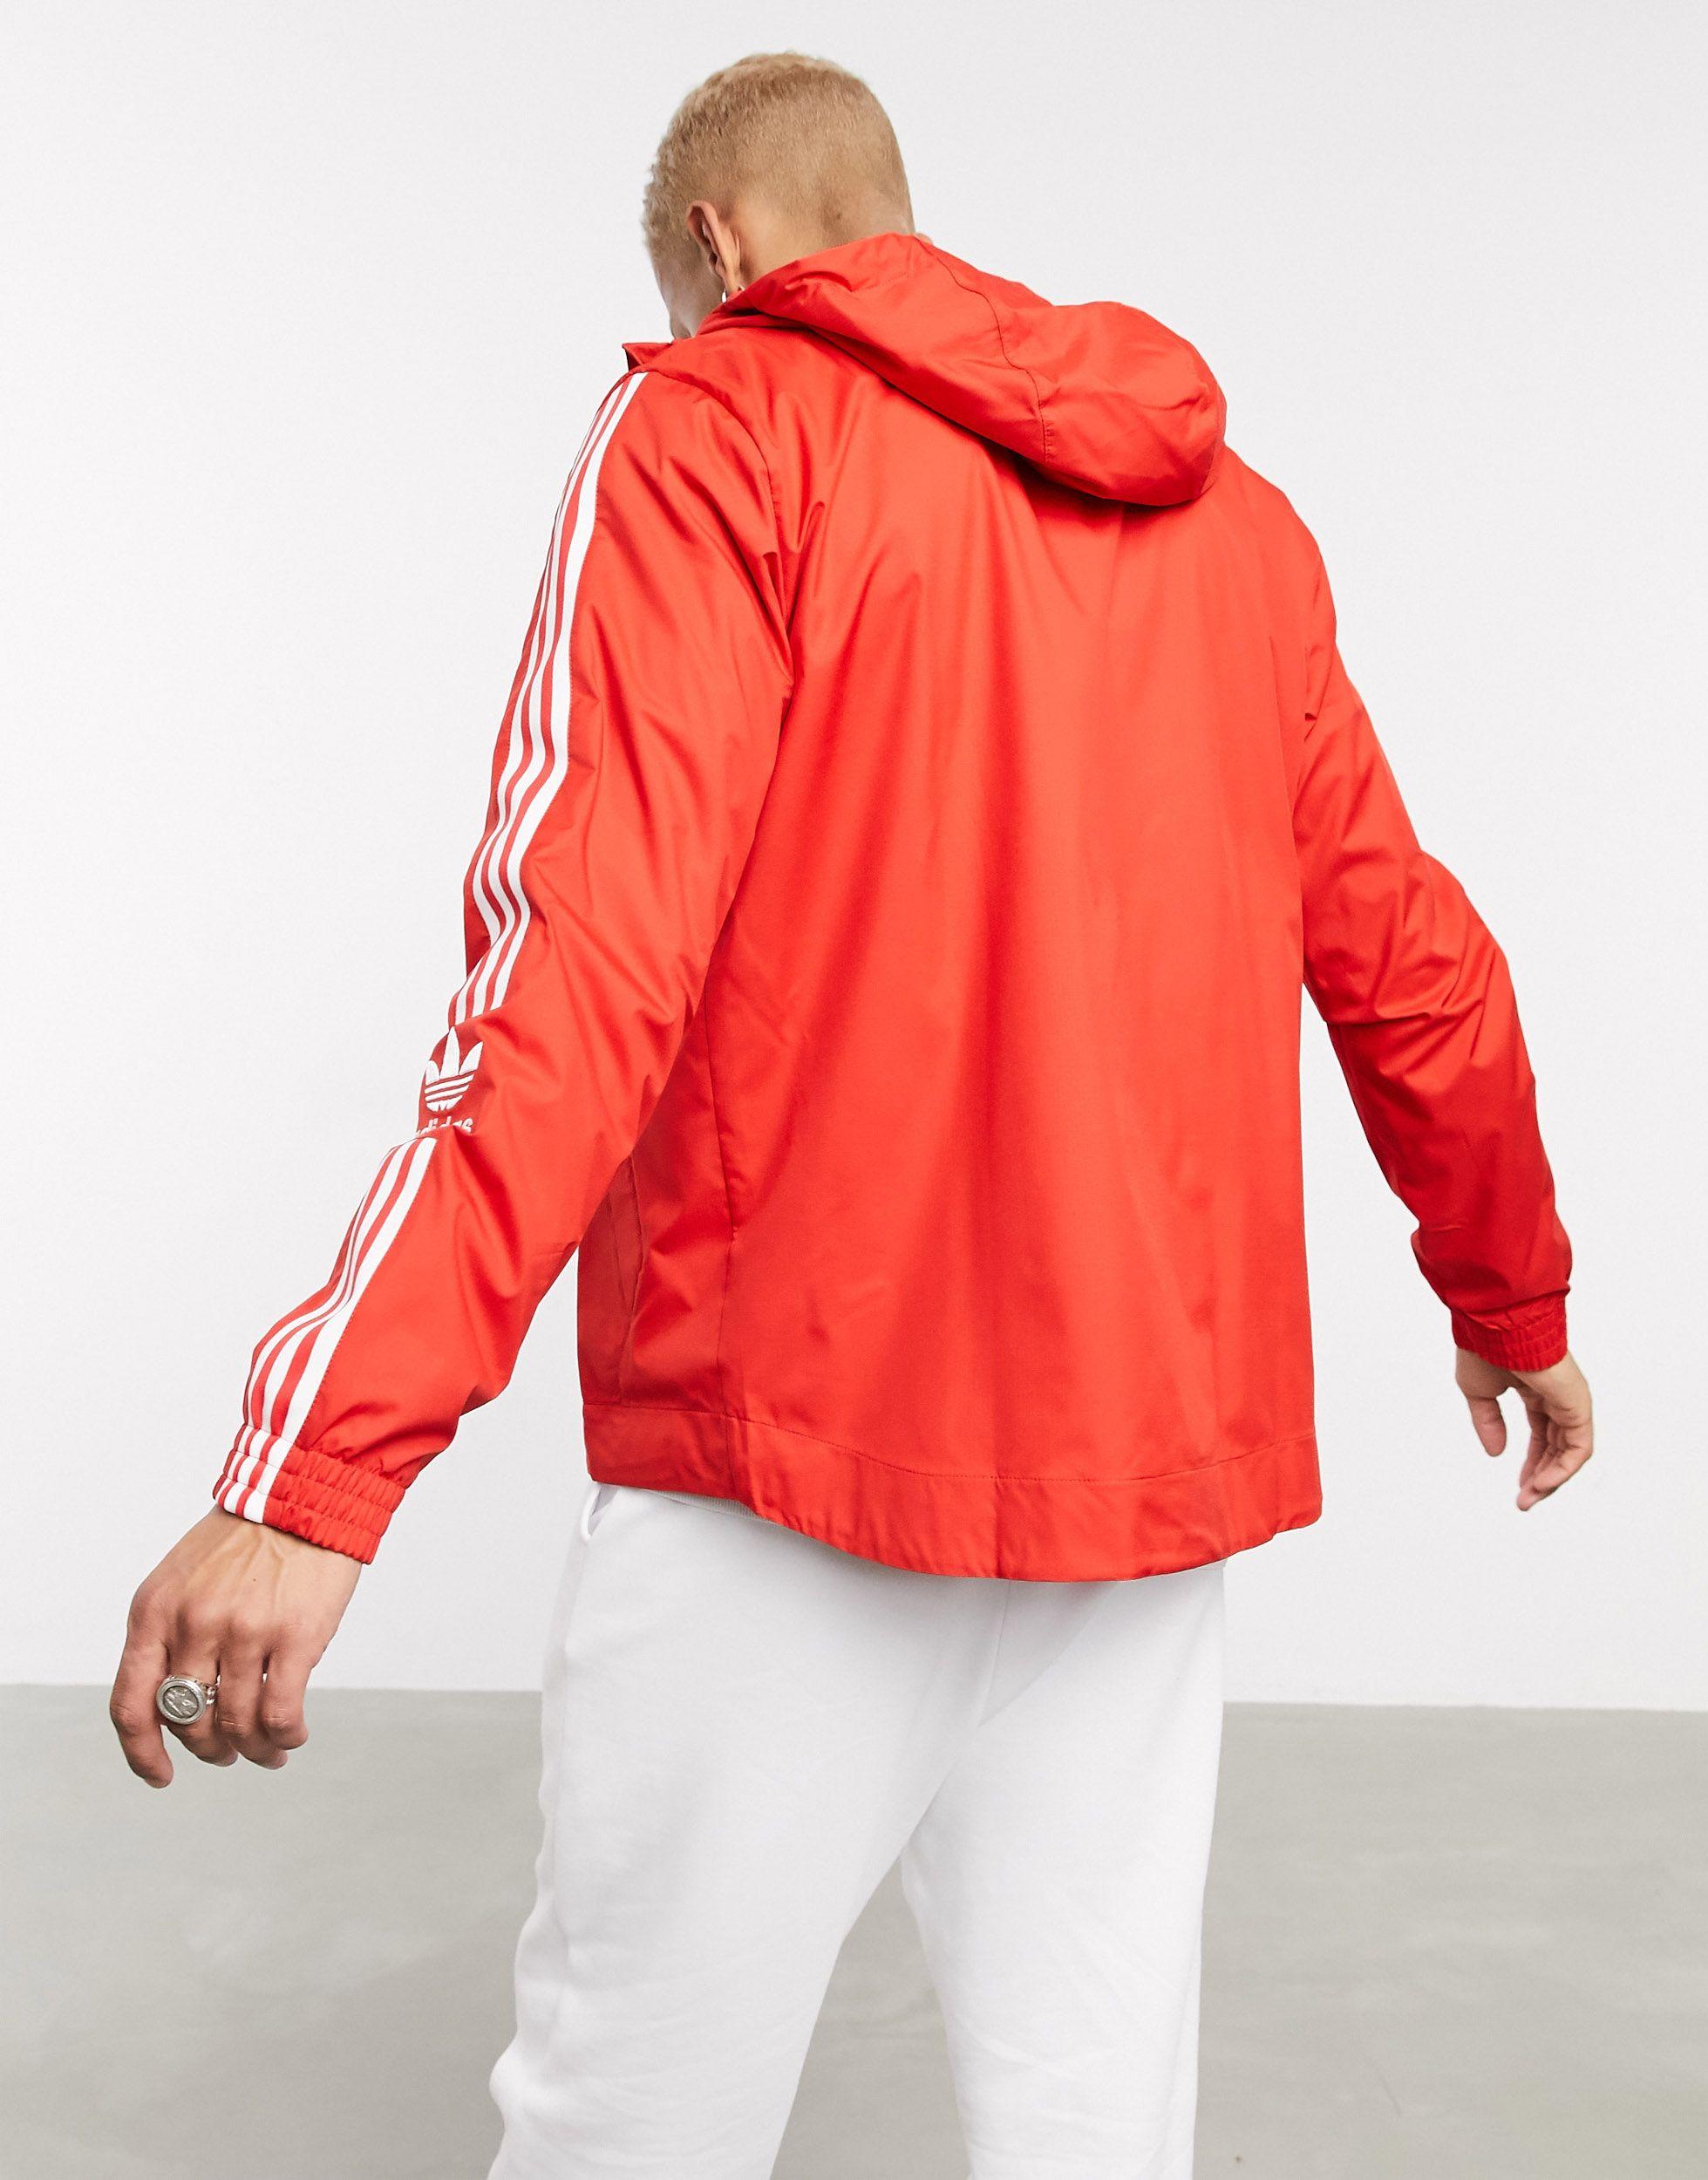 adidas Originals Lock Up West Zip Up Windbreaker in Red for Men - Lyst